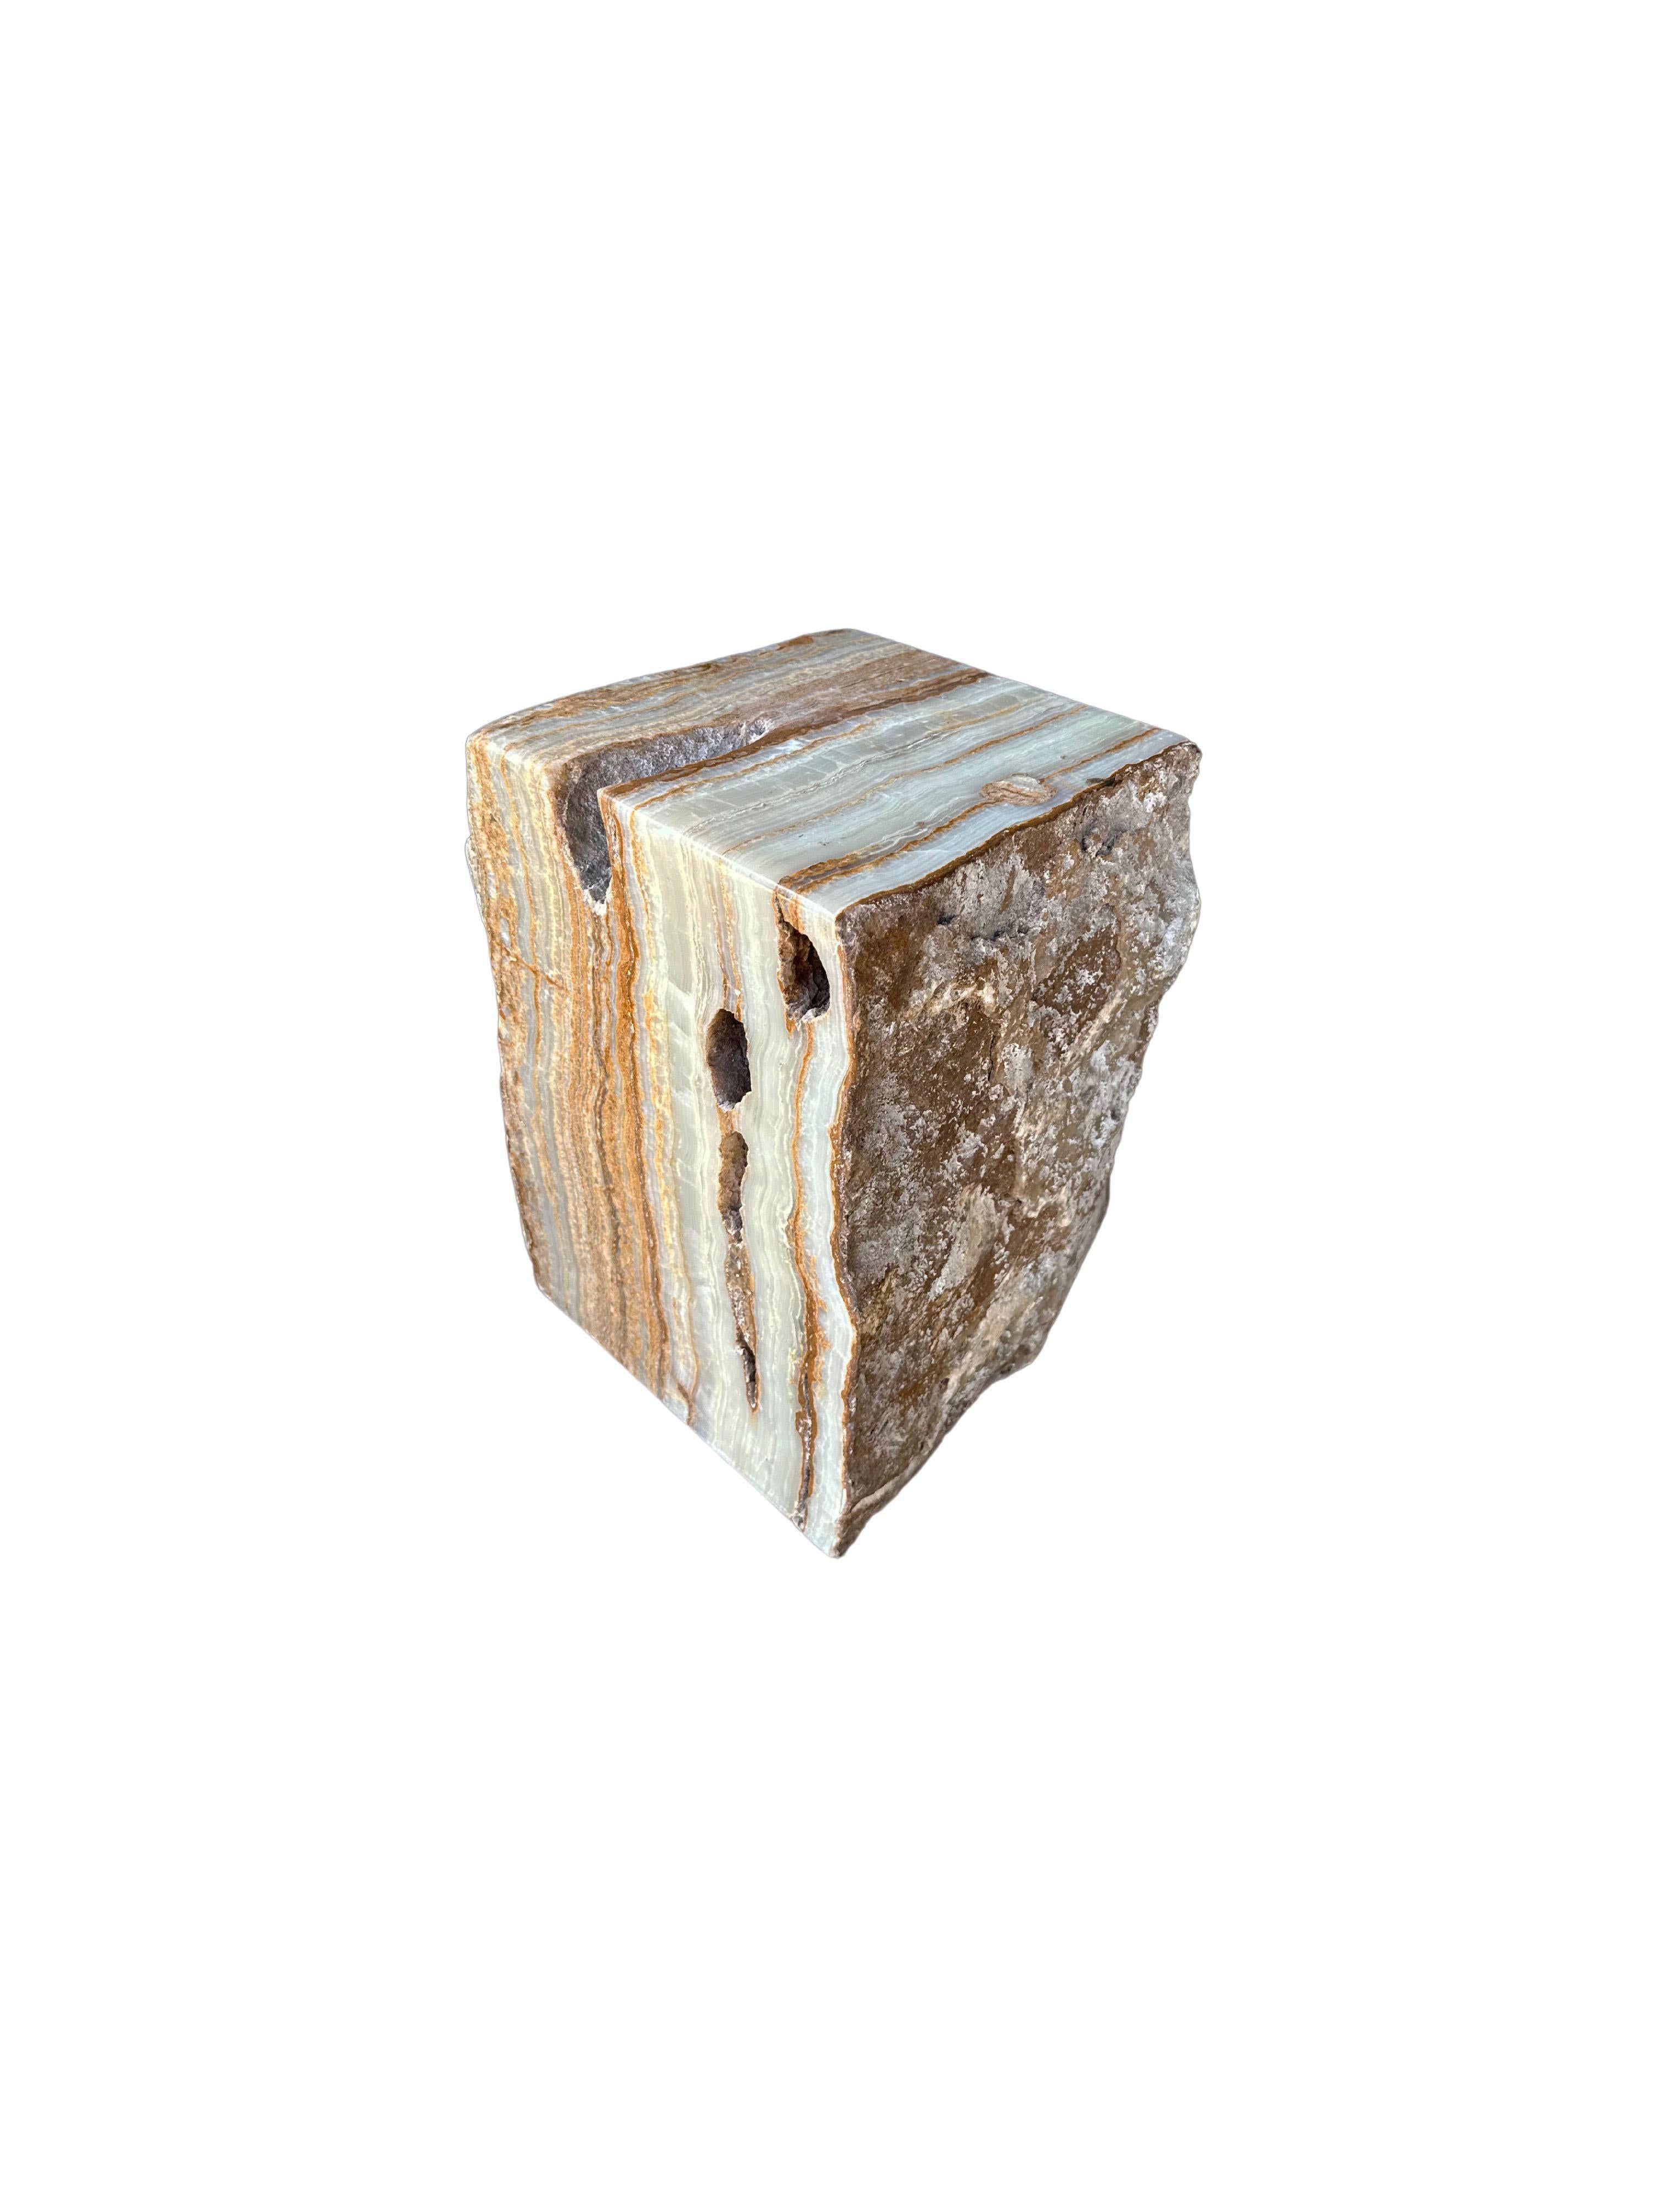 Un bloc de marbre massif Jupiter onyx qui sert de table d'appoint ou de piédestal. Provenant de l'île de Sumatra et présentant des nuances de terre et de vert jade, cet objet brut et organique présente un mélange étonnant de textures et de nuances.